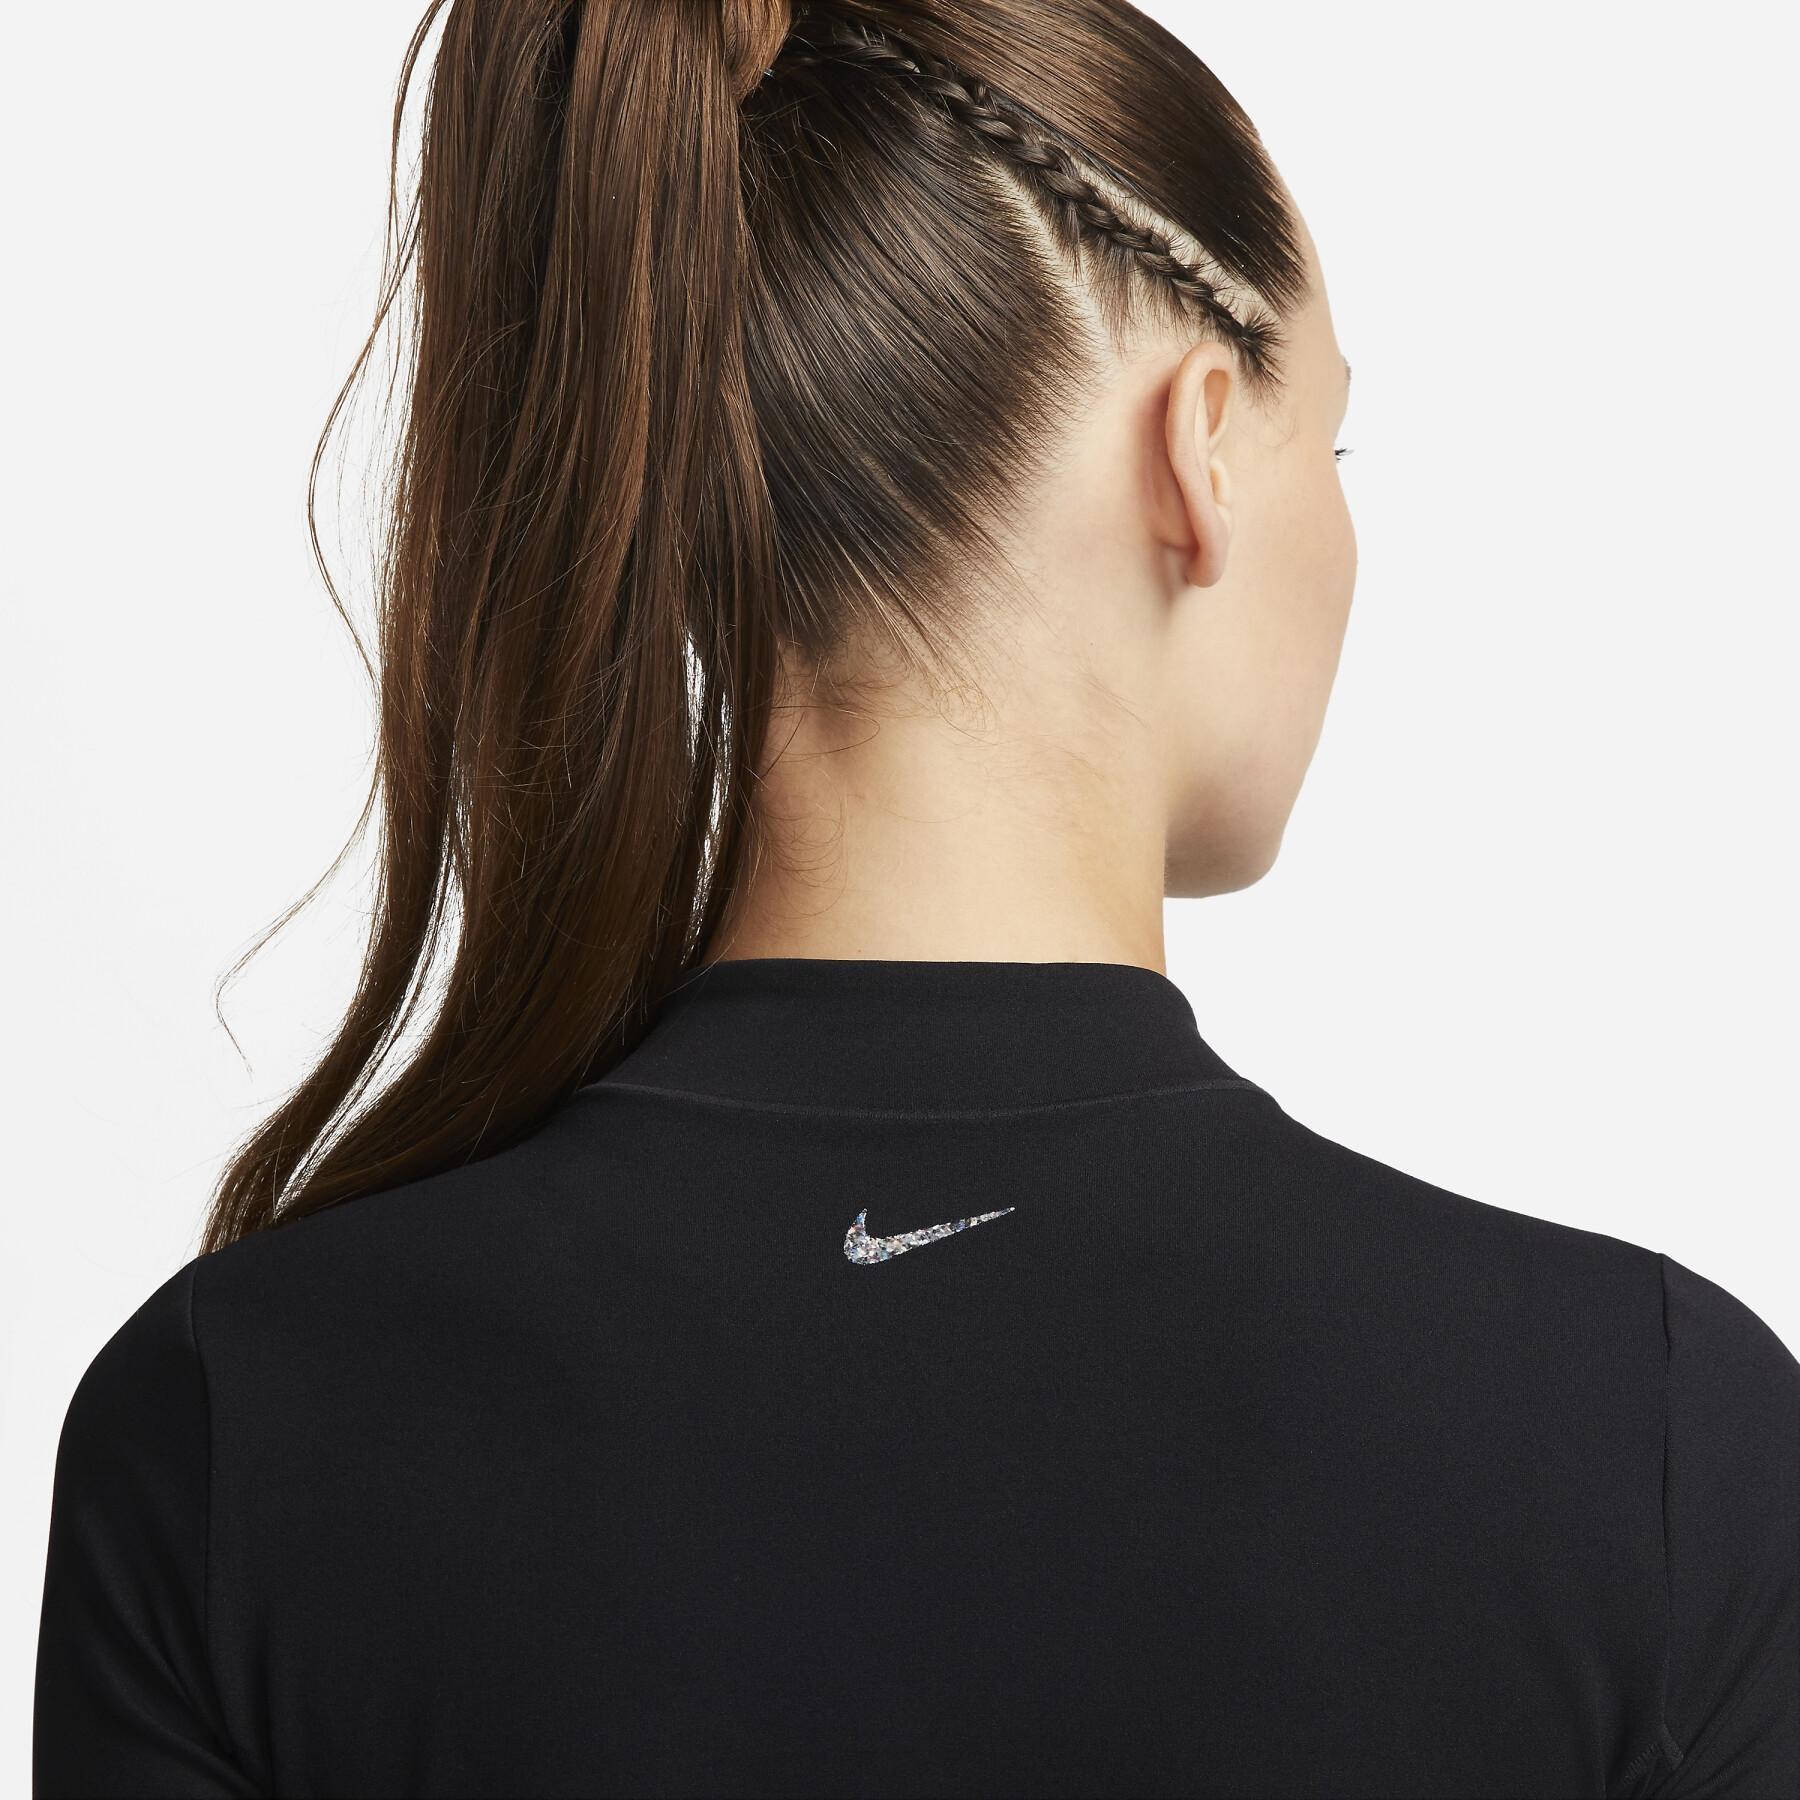 Trainingsjacke Frau Nike Dri-Fit Luxe Fitted